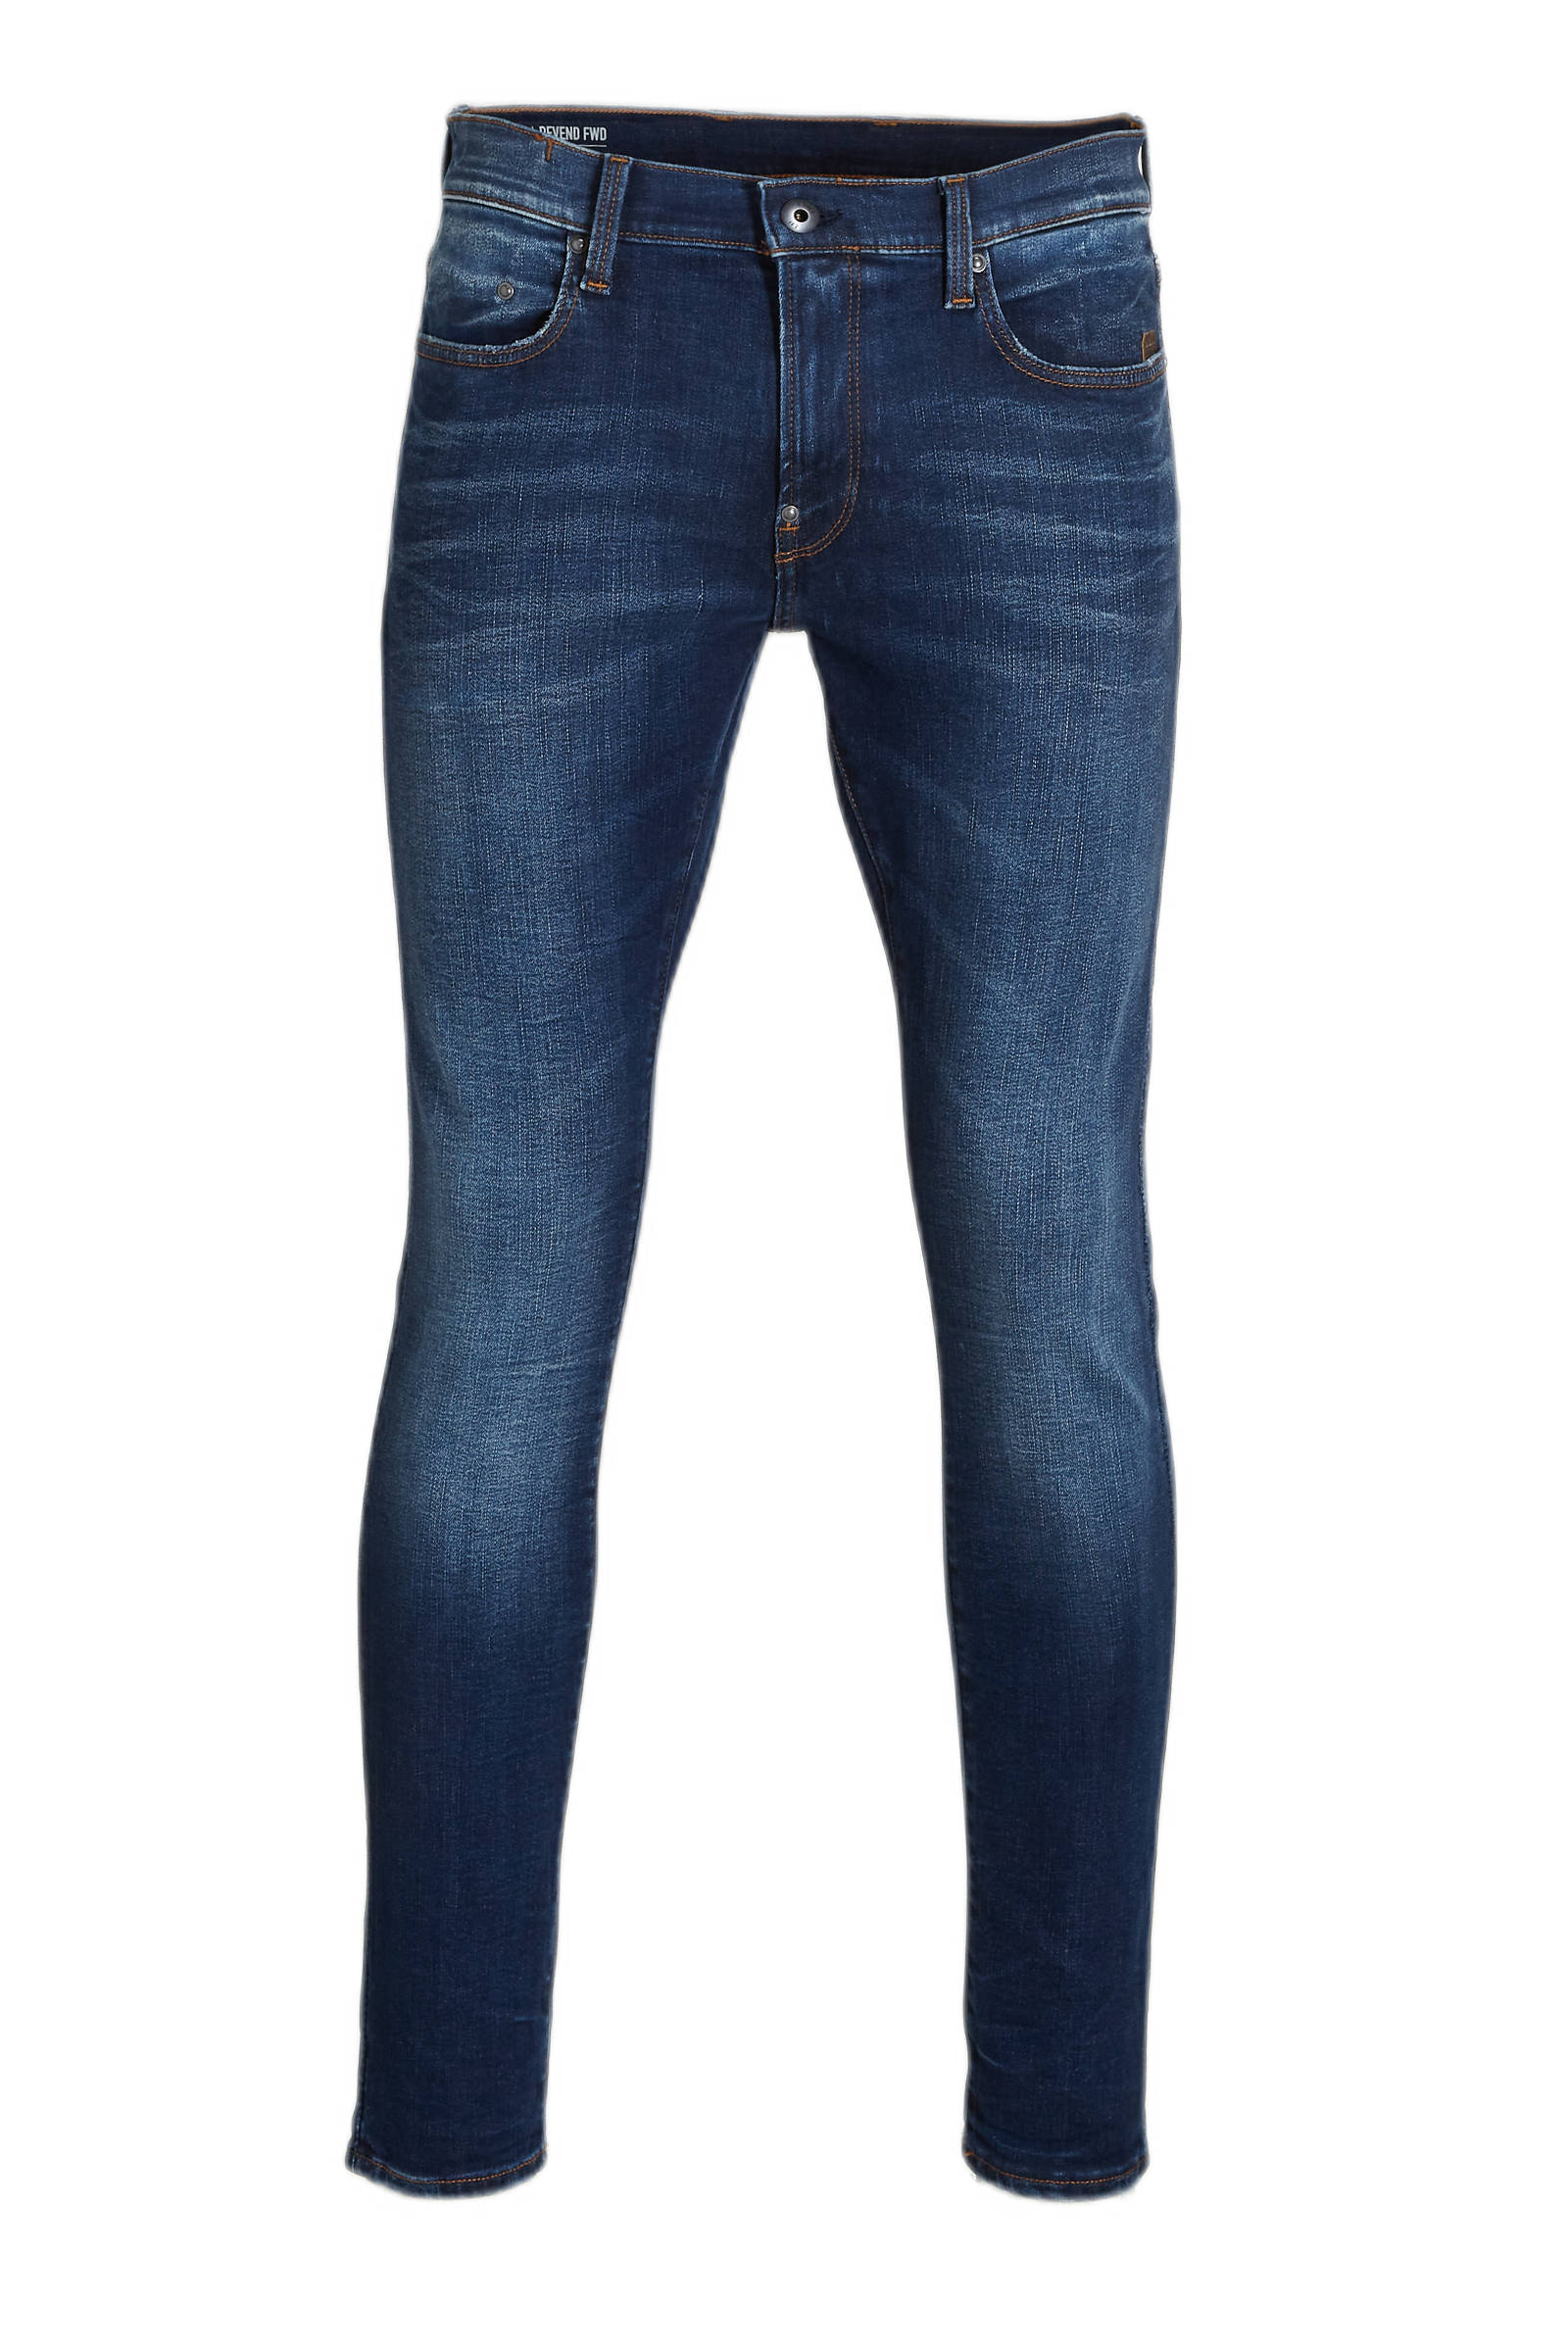 G-Star RAW Denim Revend Fwd Skinny Jeans in het Blauw voor heren Bespaar 27% Heren Kleding voor voor Jeans voor Skinny jeans 